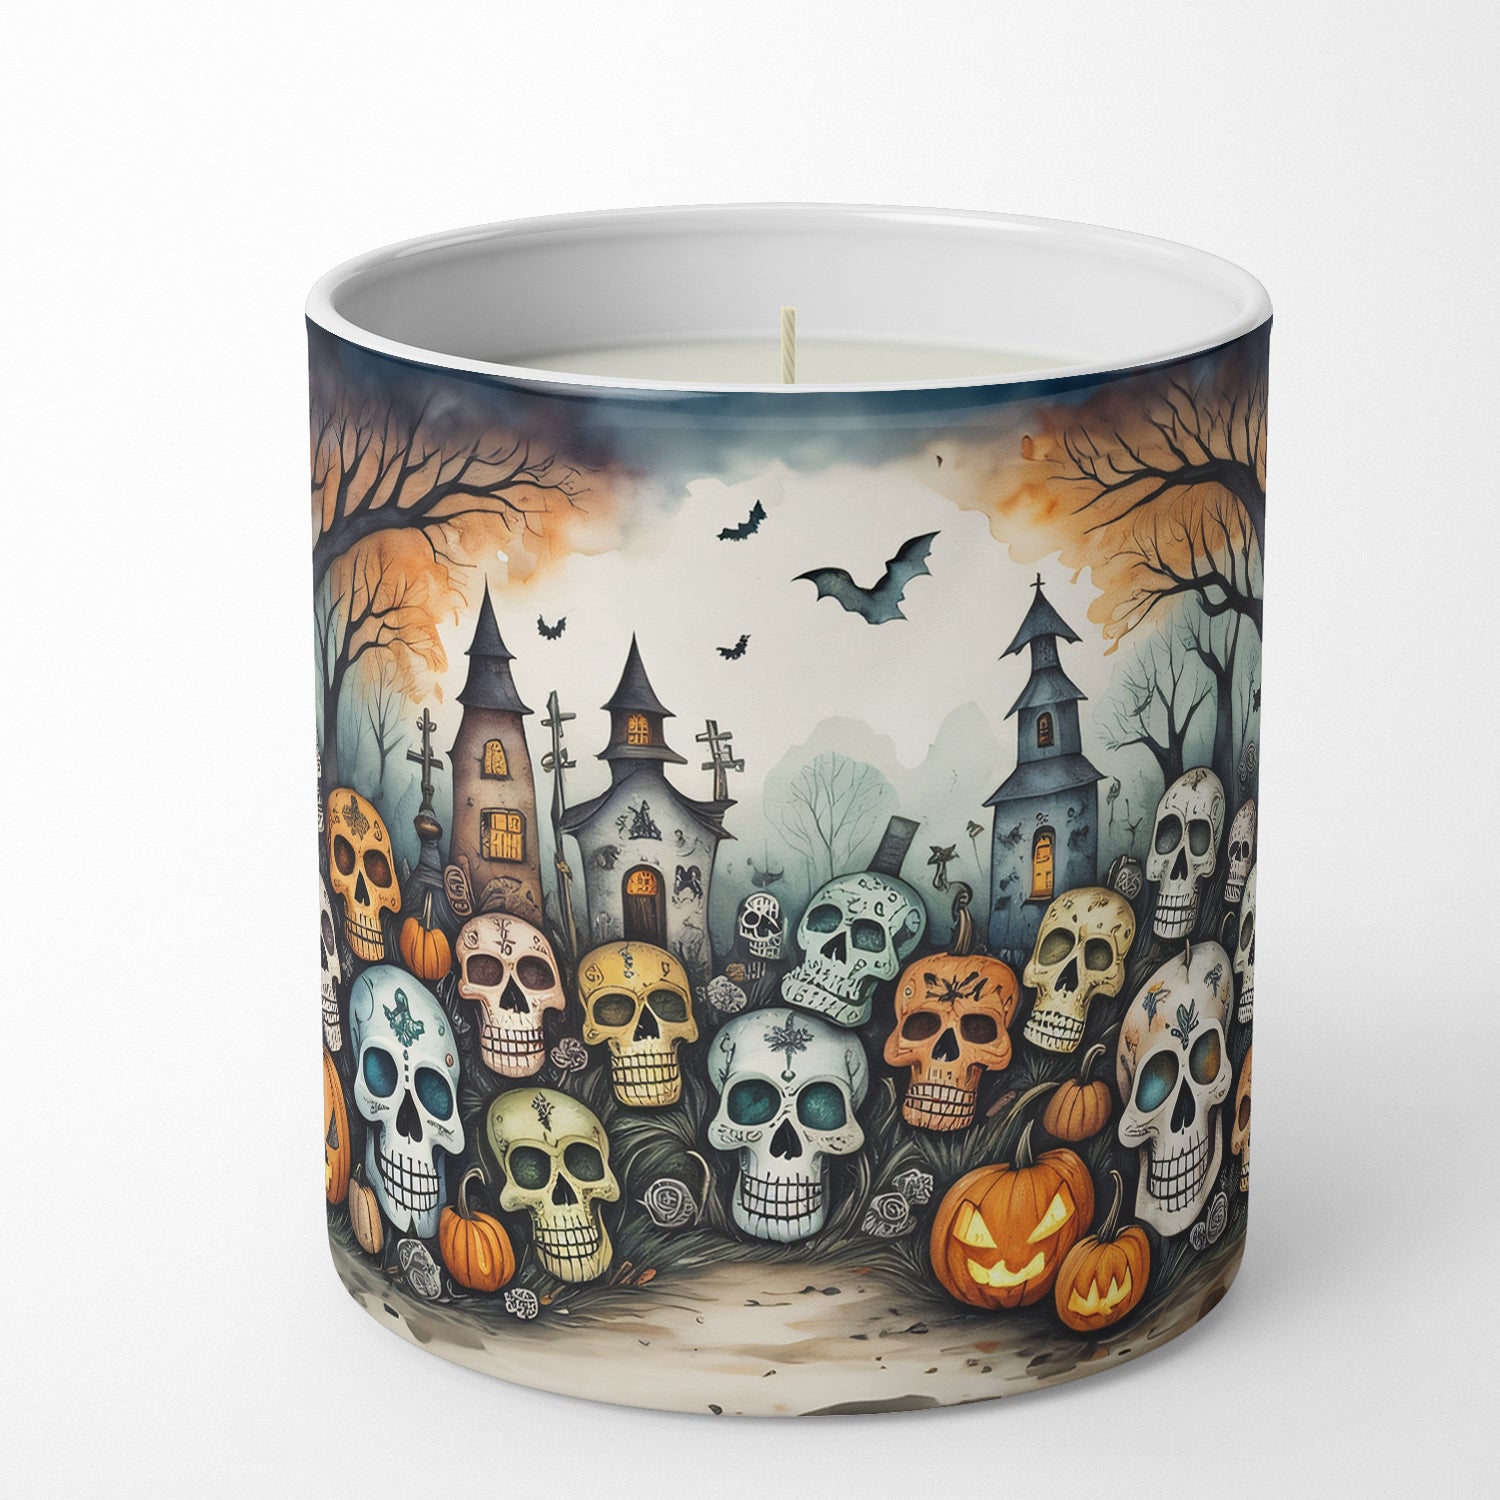 Buy this Calaveras Sugar Skulls Spooky Halloween Decorative Soy Candle